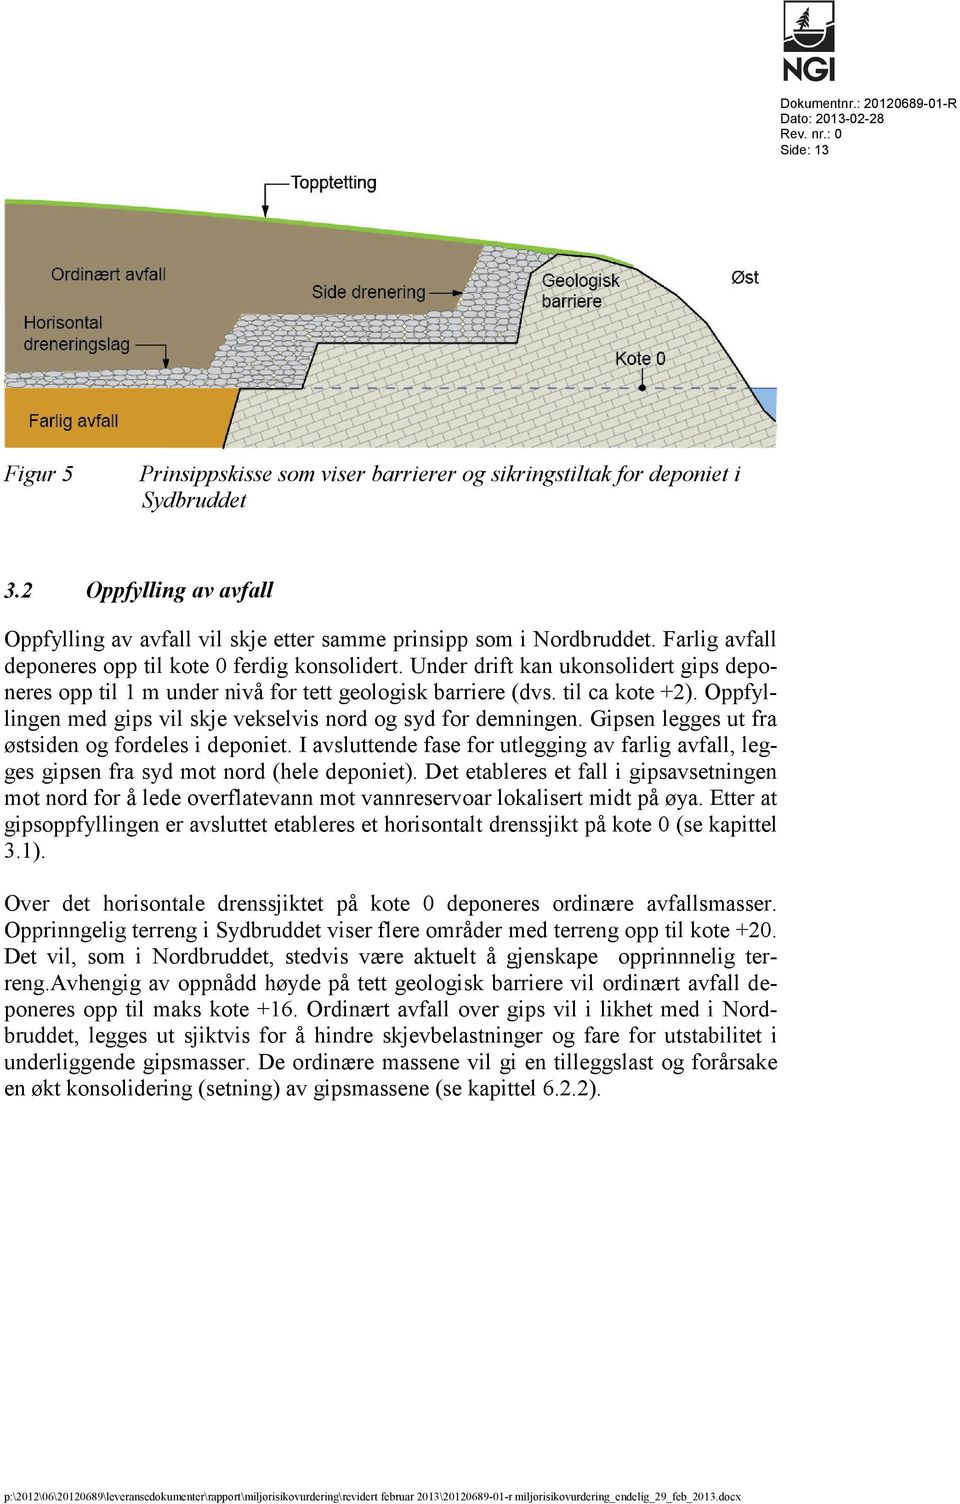 Under drift kan ukonsolidert gips deponeres opp til 1 m under nivå for tett geologisk barriere (dvs. til ca kote +2). Oppfyllingen med gips vil skje vekselvis nord og syd for demningen.